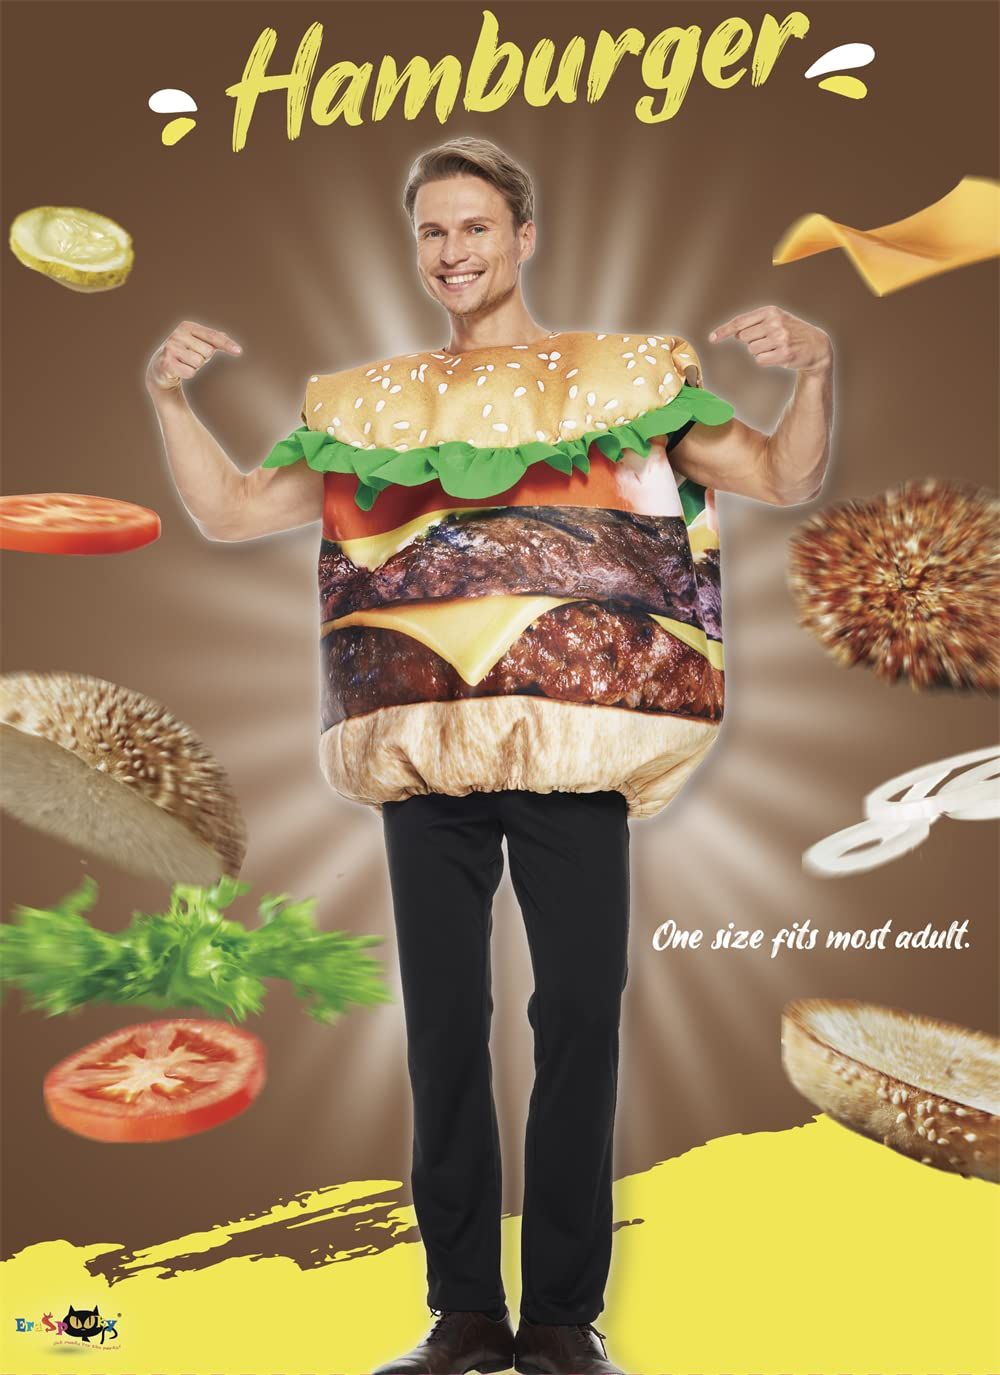 EraSpooky Hamburger-Kostüm für Erwachsene, lustiger Food-Party-Halloween-Anzug